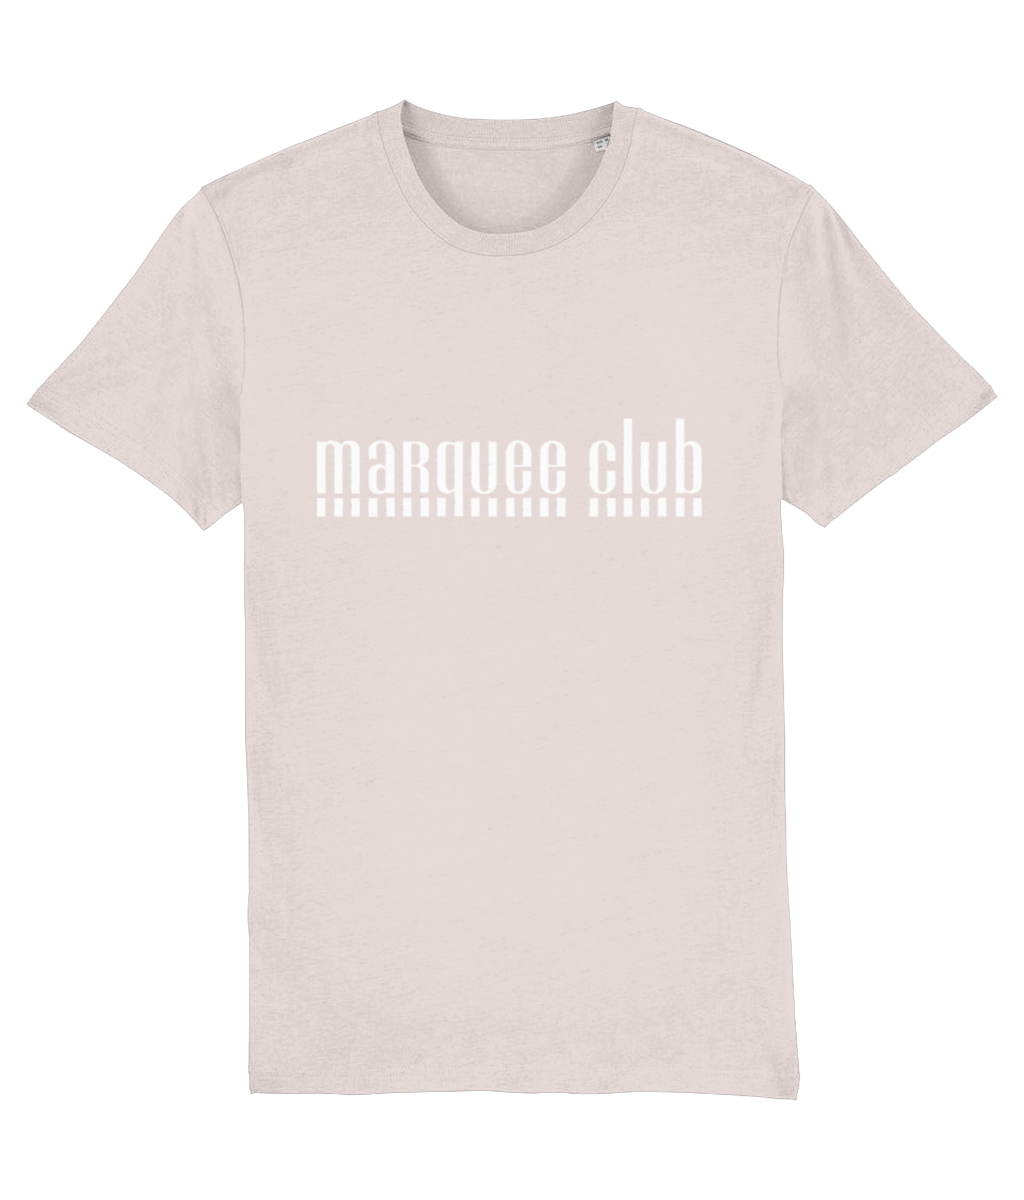 Marquee Club T-Shirt